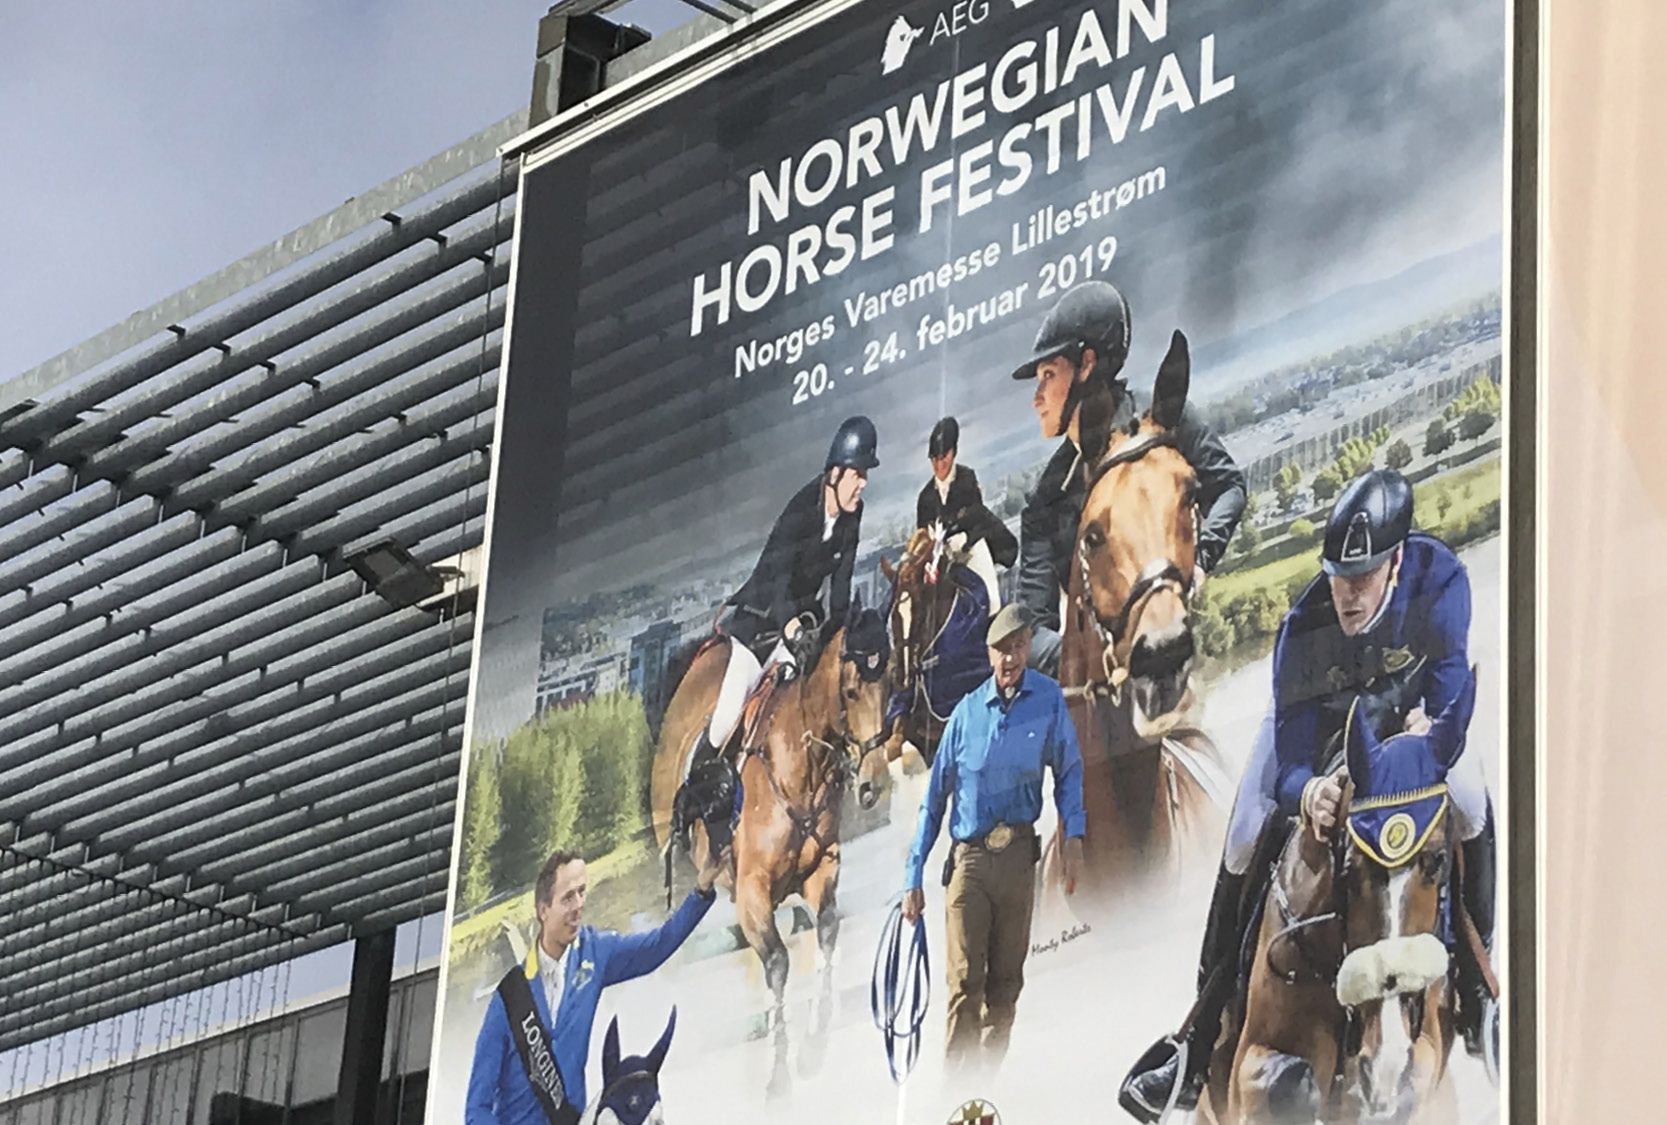 Borga på mässa | Norwegian Horse Festival